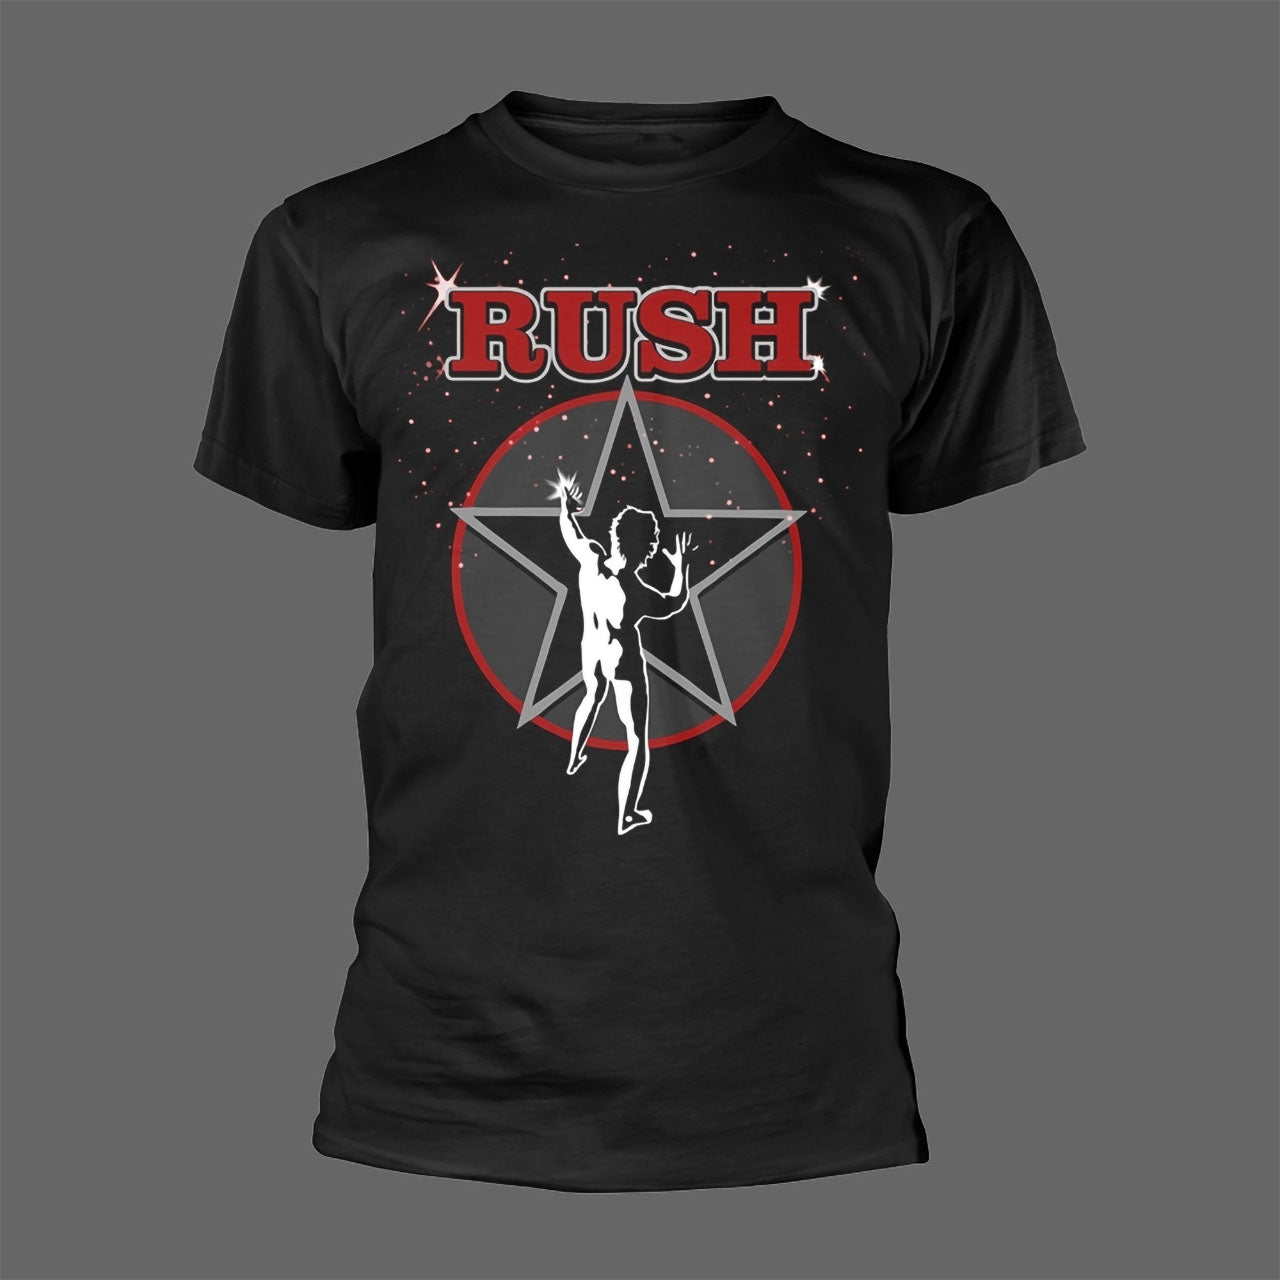 Rush - 2112 (Red) (T-Shirt)